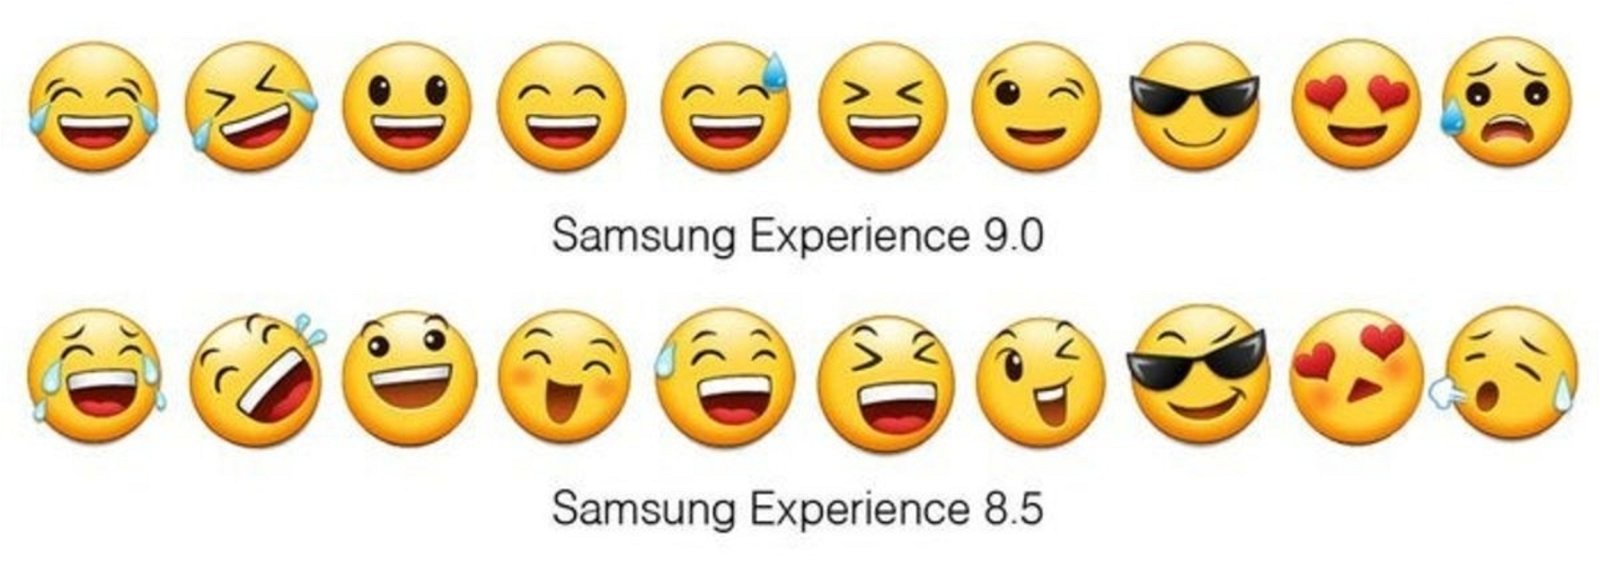 emojis-samsung-experience-9-3